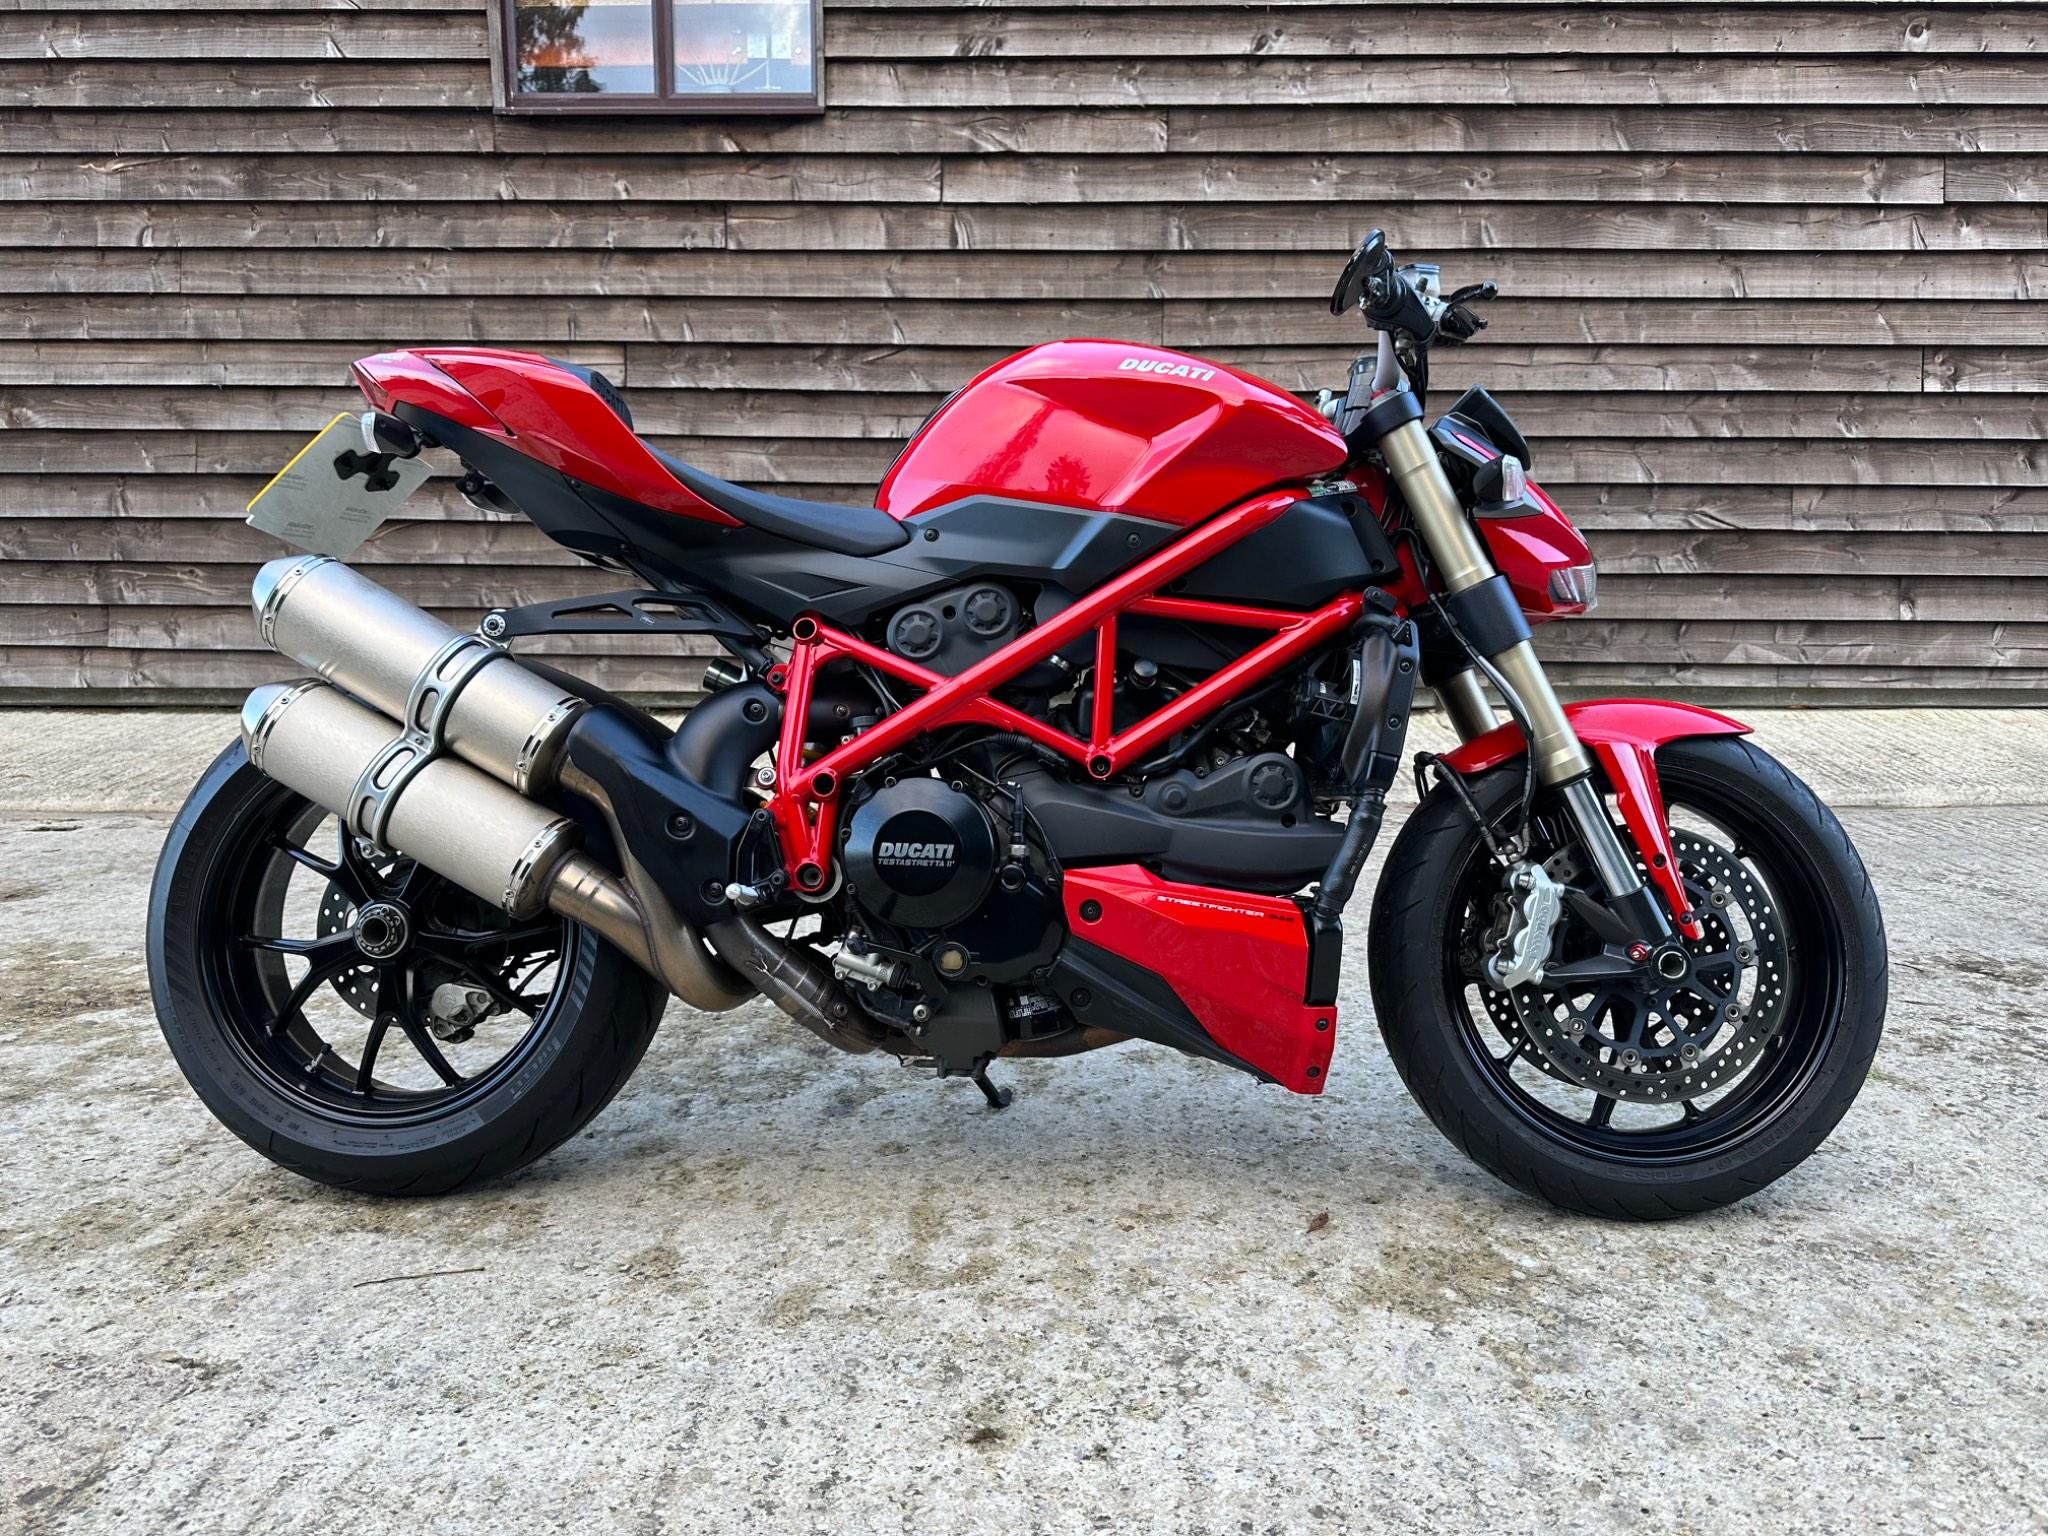 2014 Ducati 848 street fighter